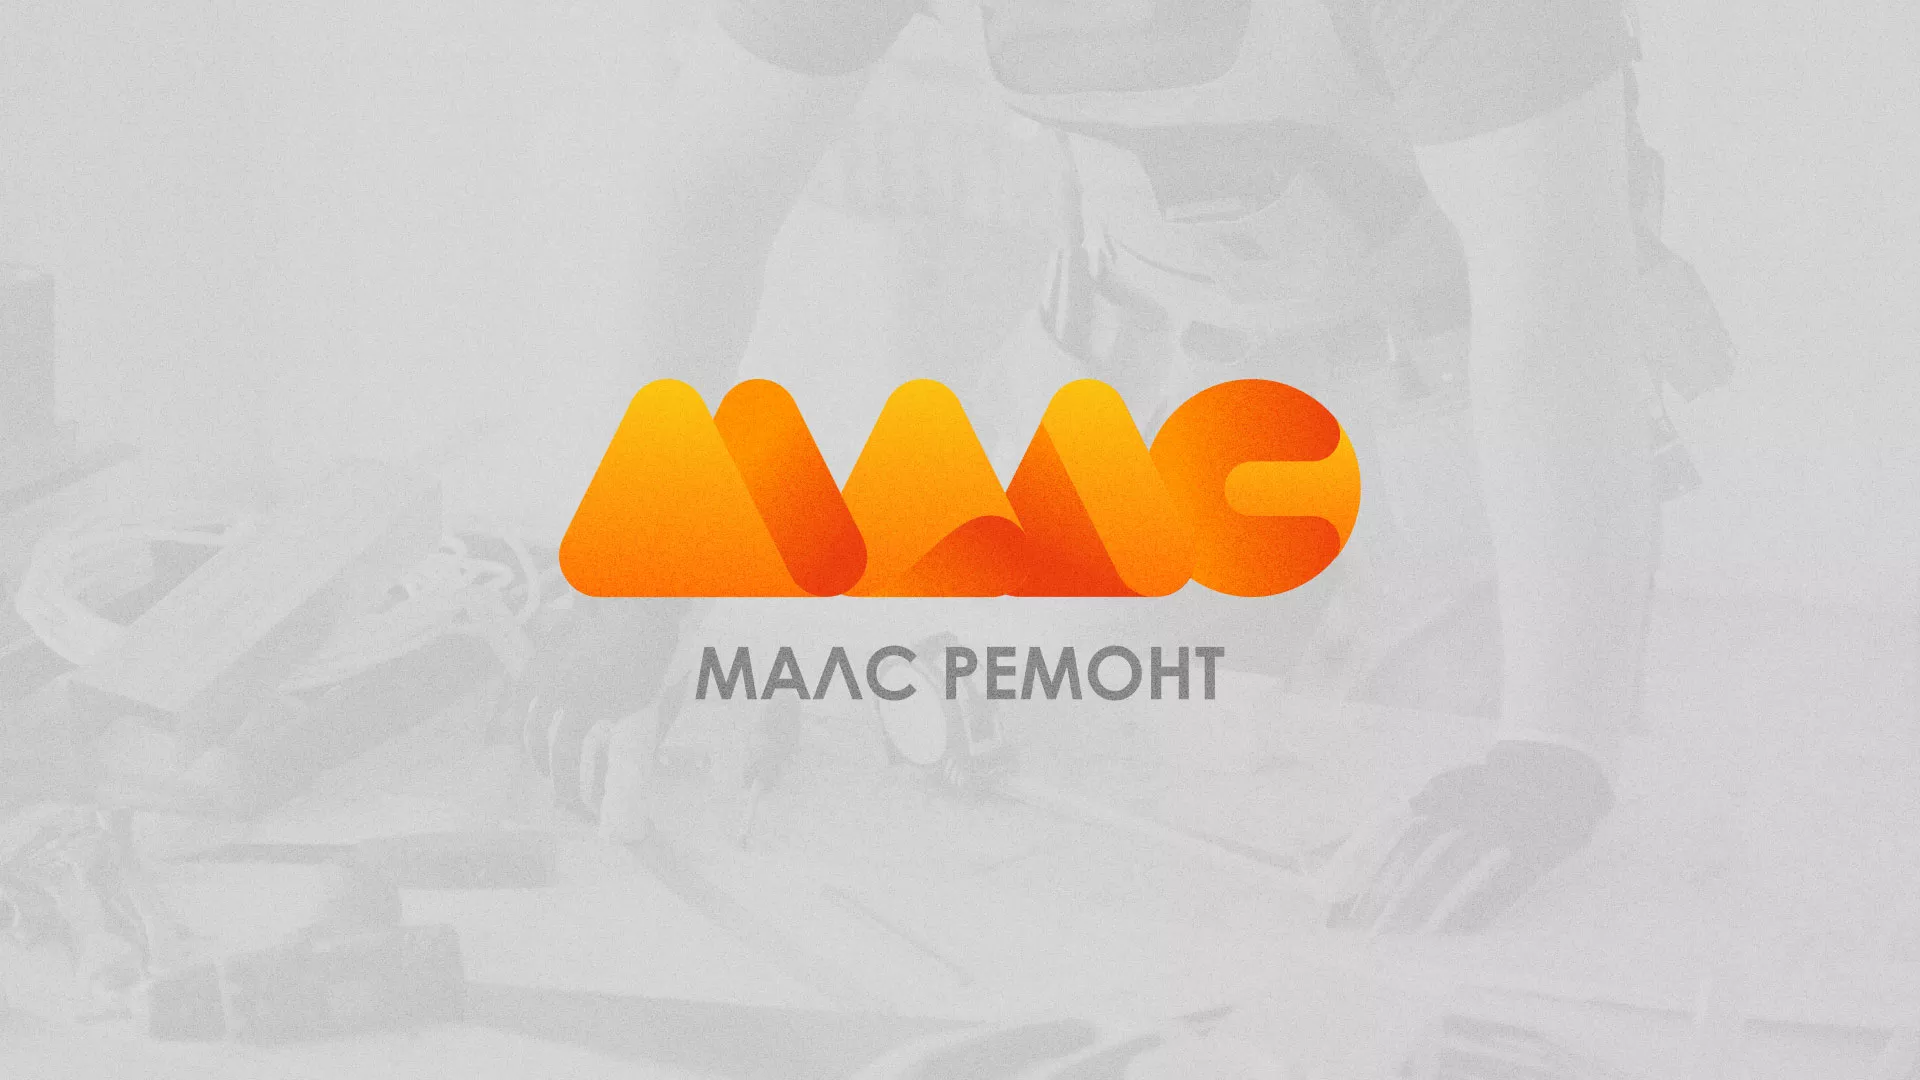 Создание логотипа для компании «МАЛС РЕМОНТ» в Люберцах